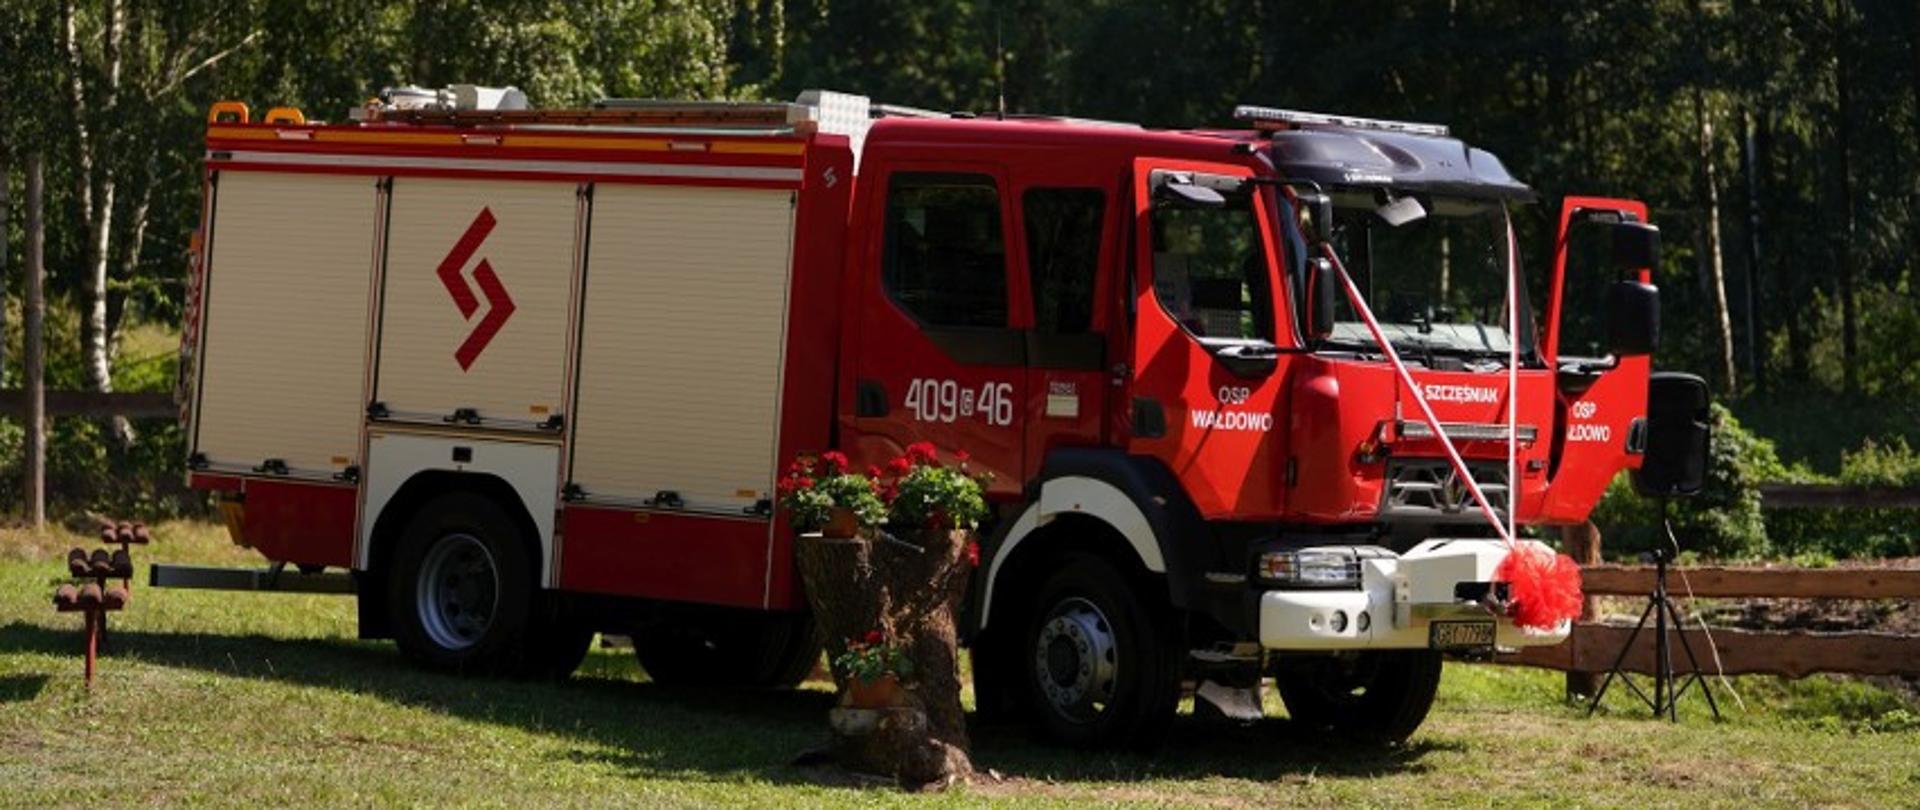 Zdjęcie przedstawia stojący na polanie wóz strażacki. Na masce ma on 2 wstęgi biało-czerwone, które łączą się na zderzaku. Drzwi do wozu są otwarte. Obok niego poustawiane są czerwone kwiaty.